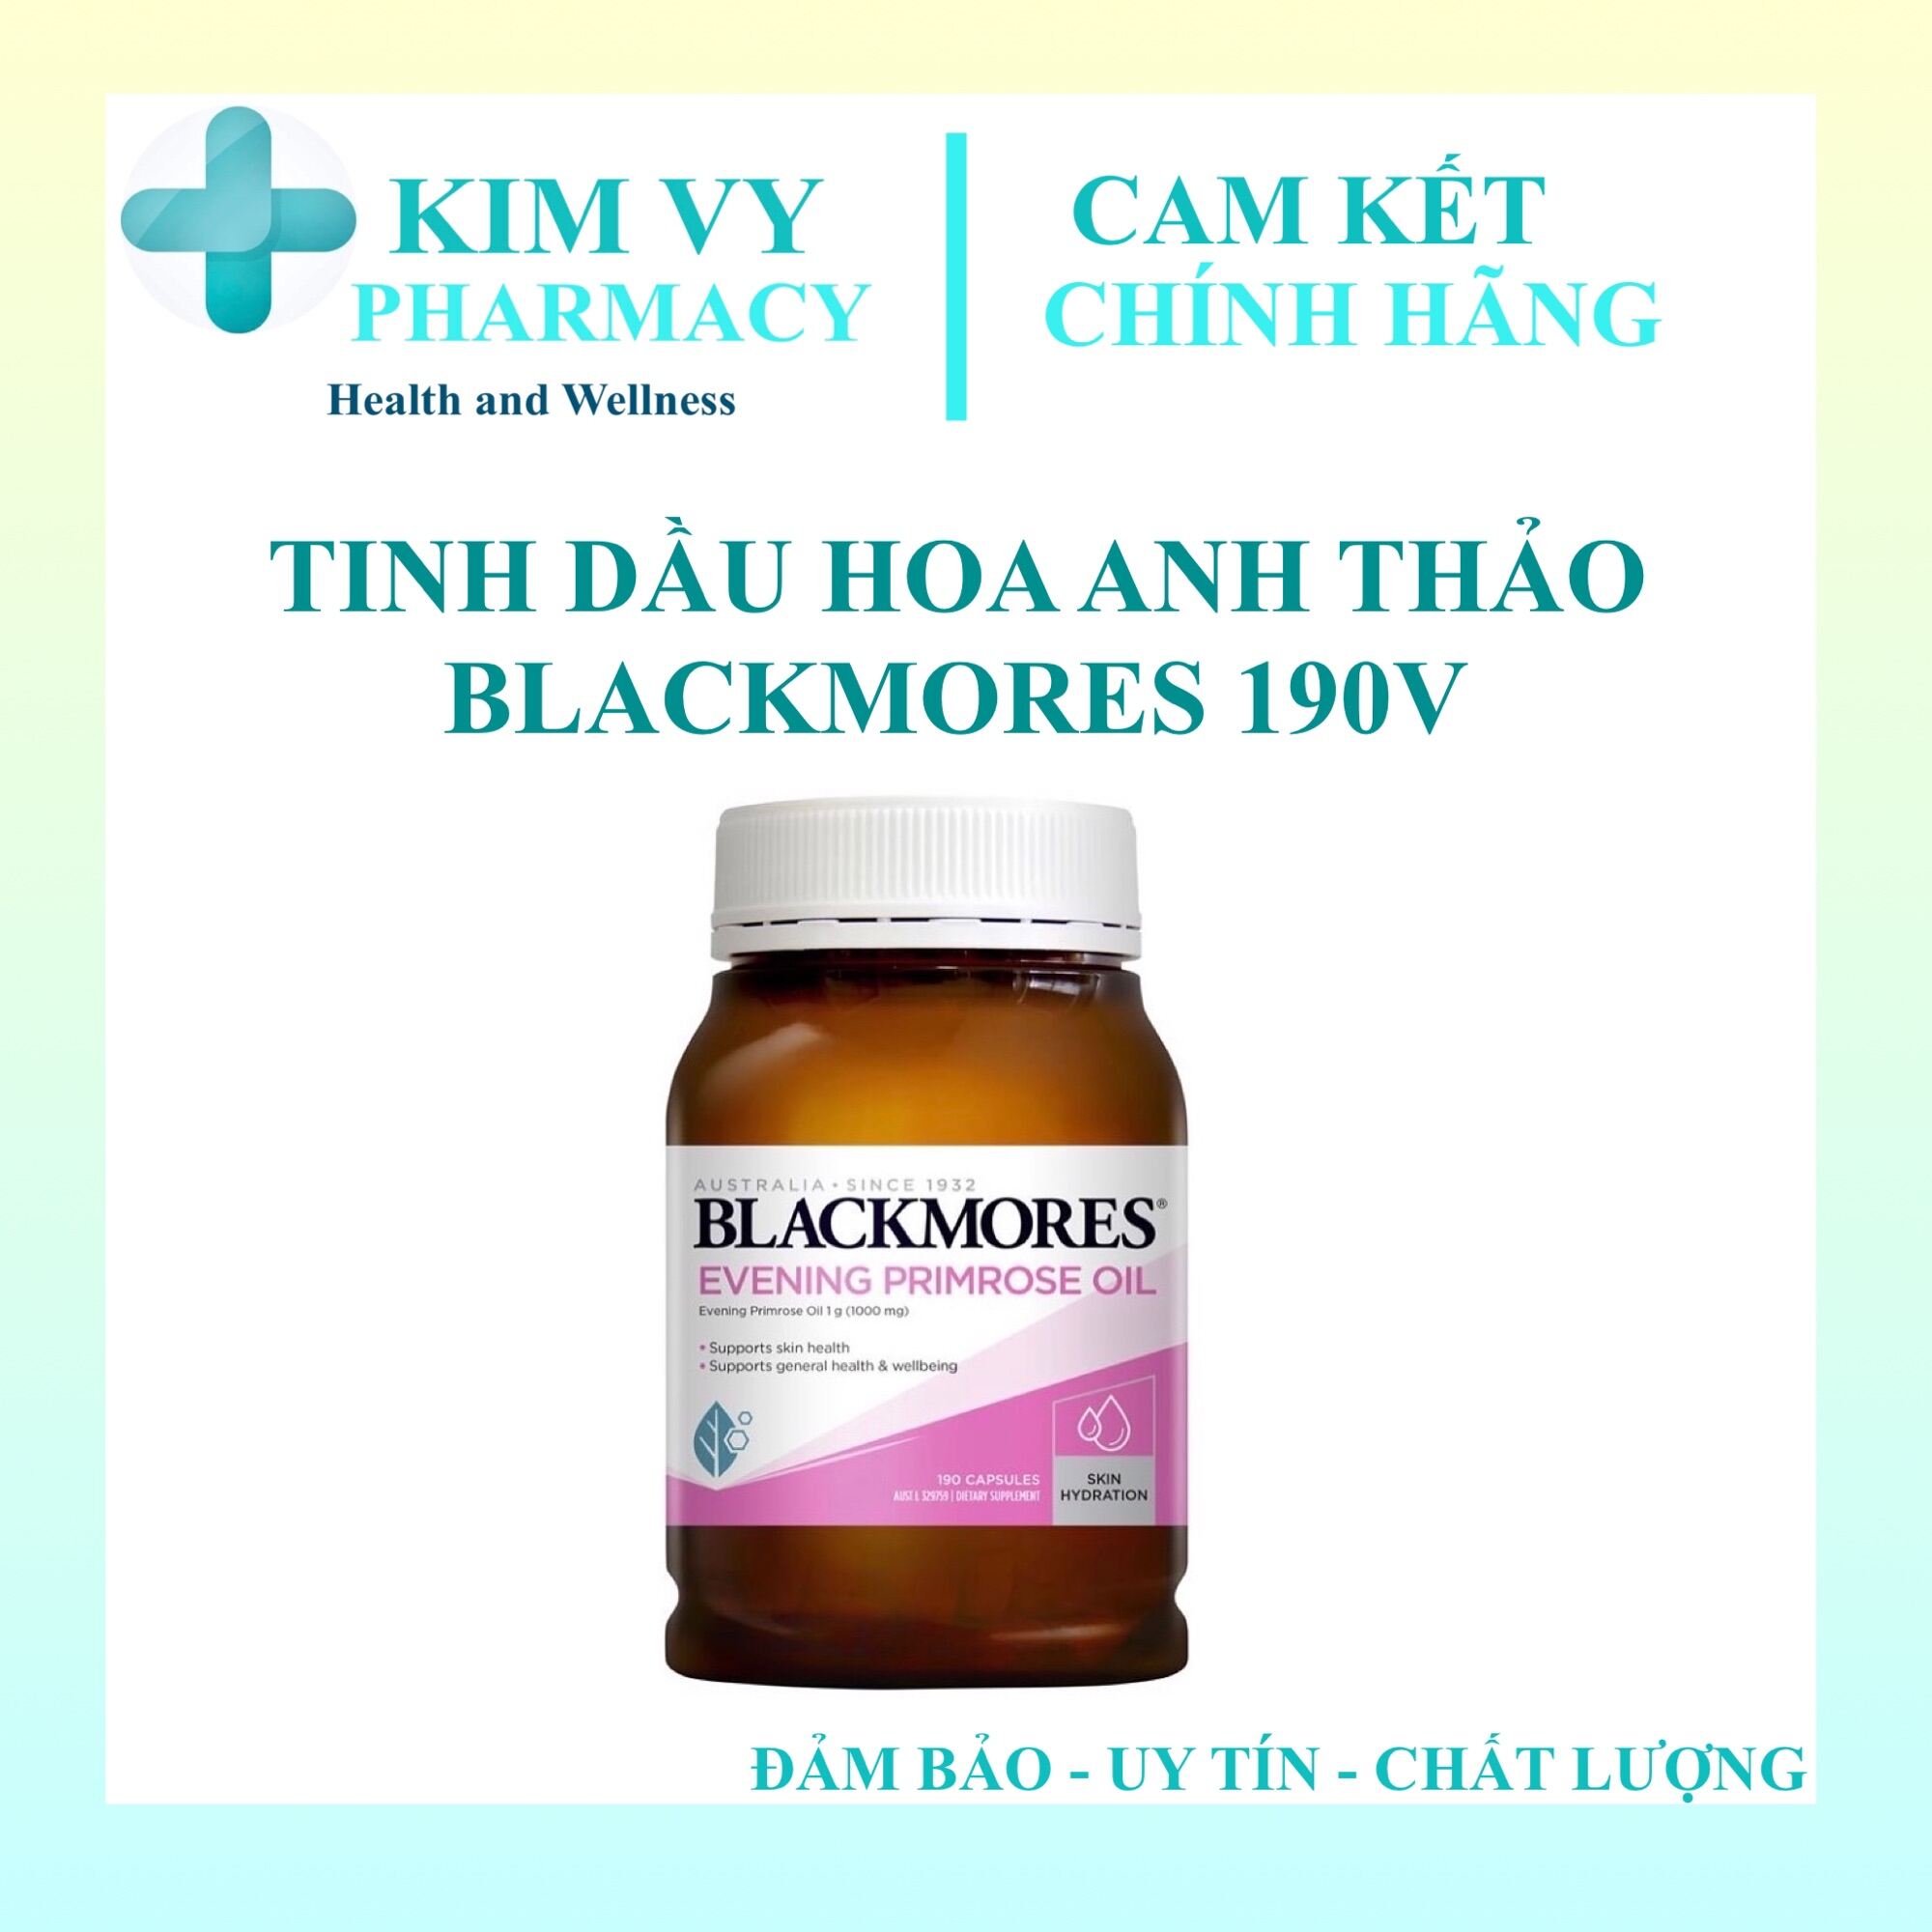 CAM KẾT CHÍNH HÃNG TINH DẦU HOA ANH THẢO BLACKMORES 190V